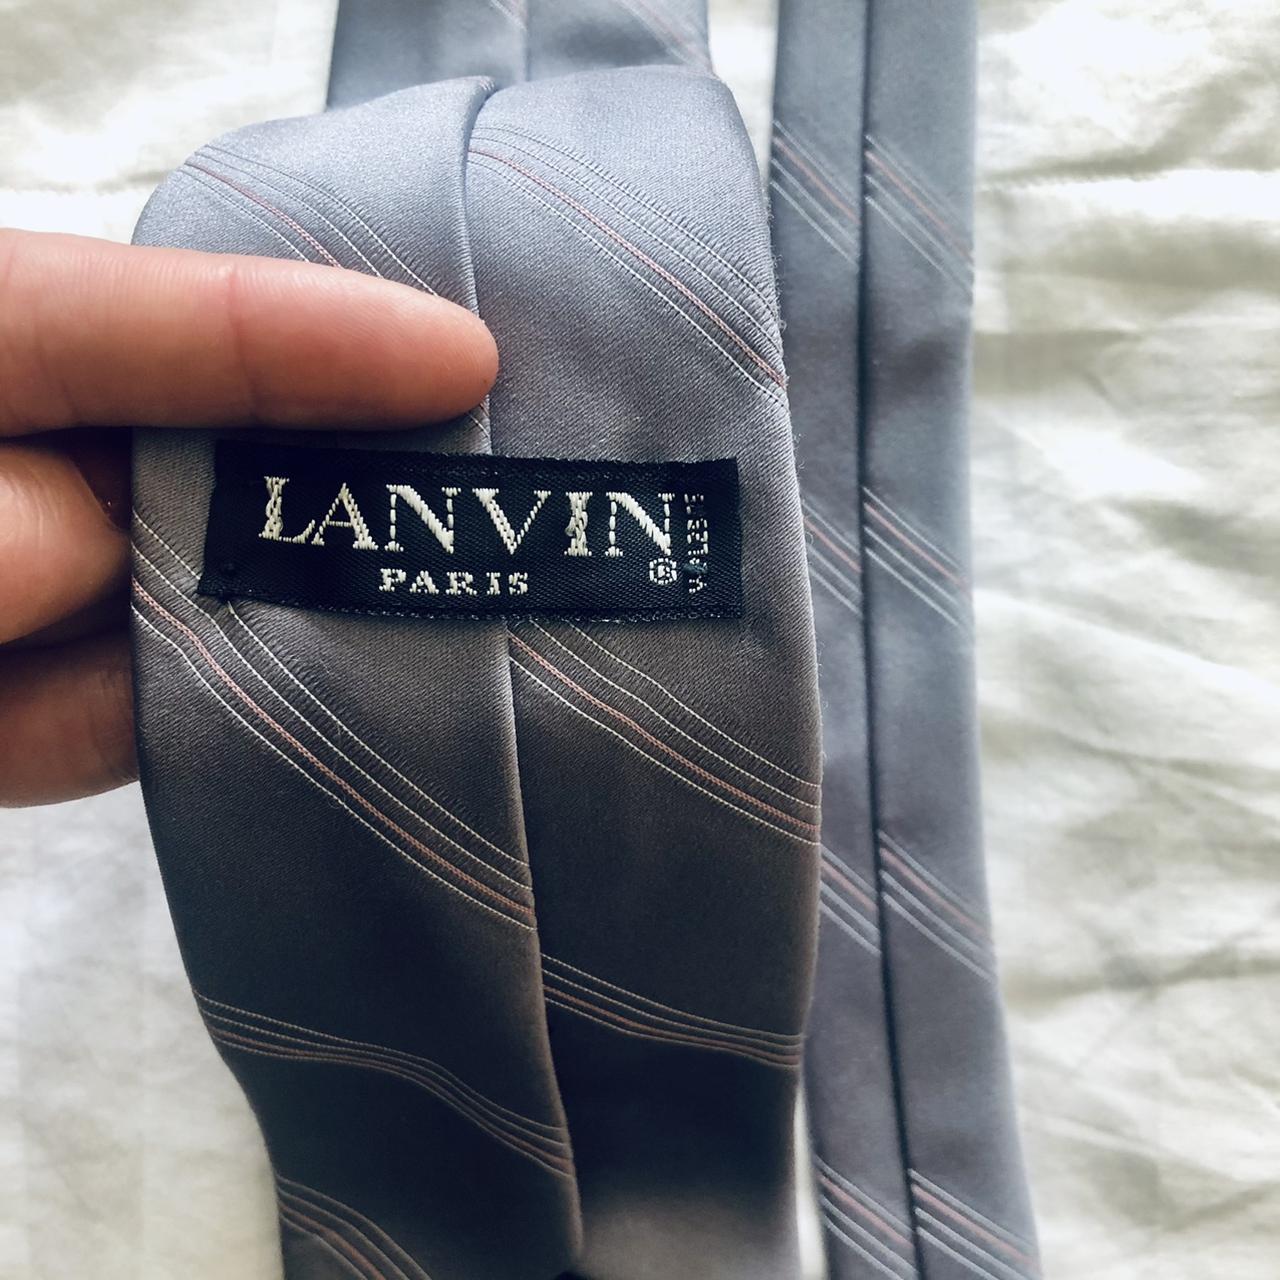 Lanvin Men's Silver and Grey Accessory